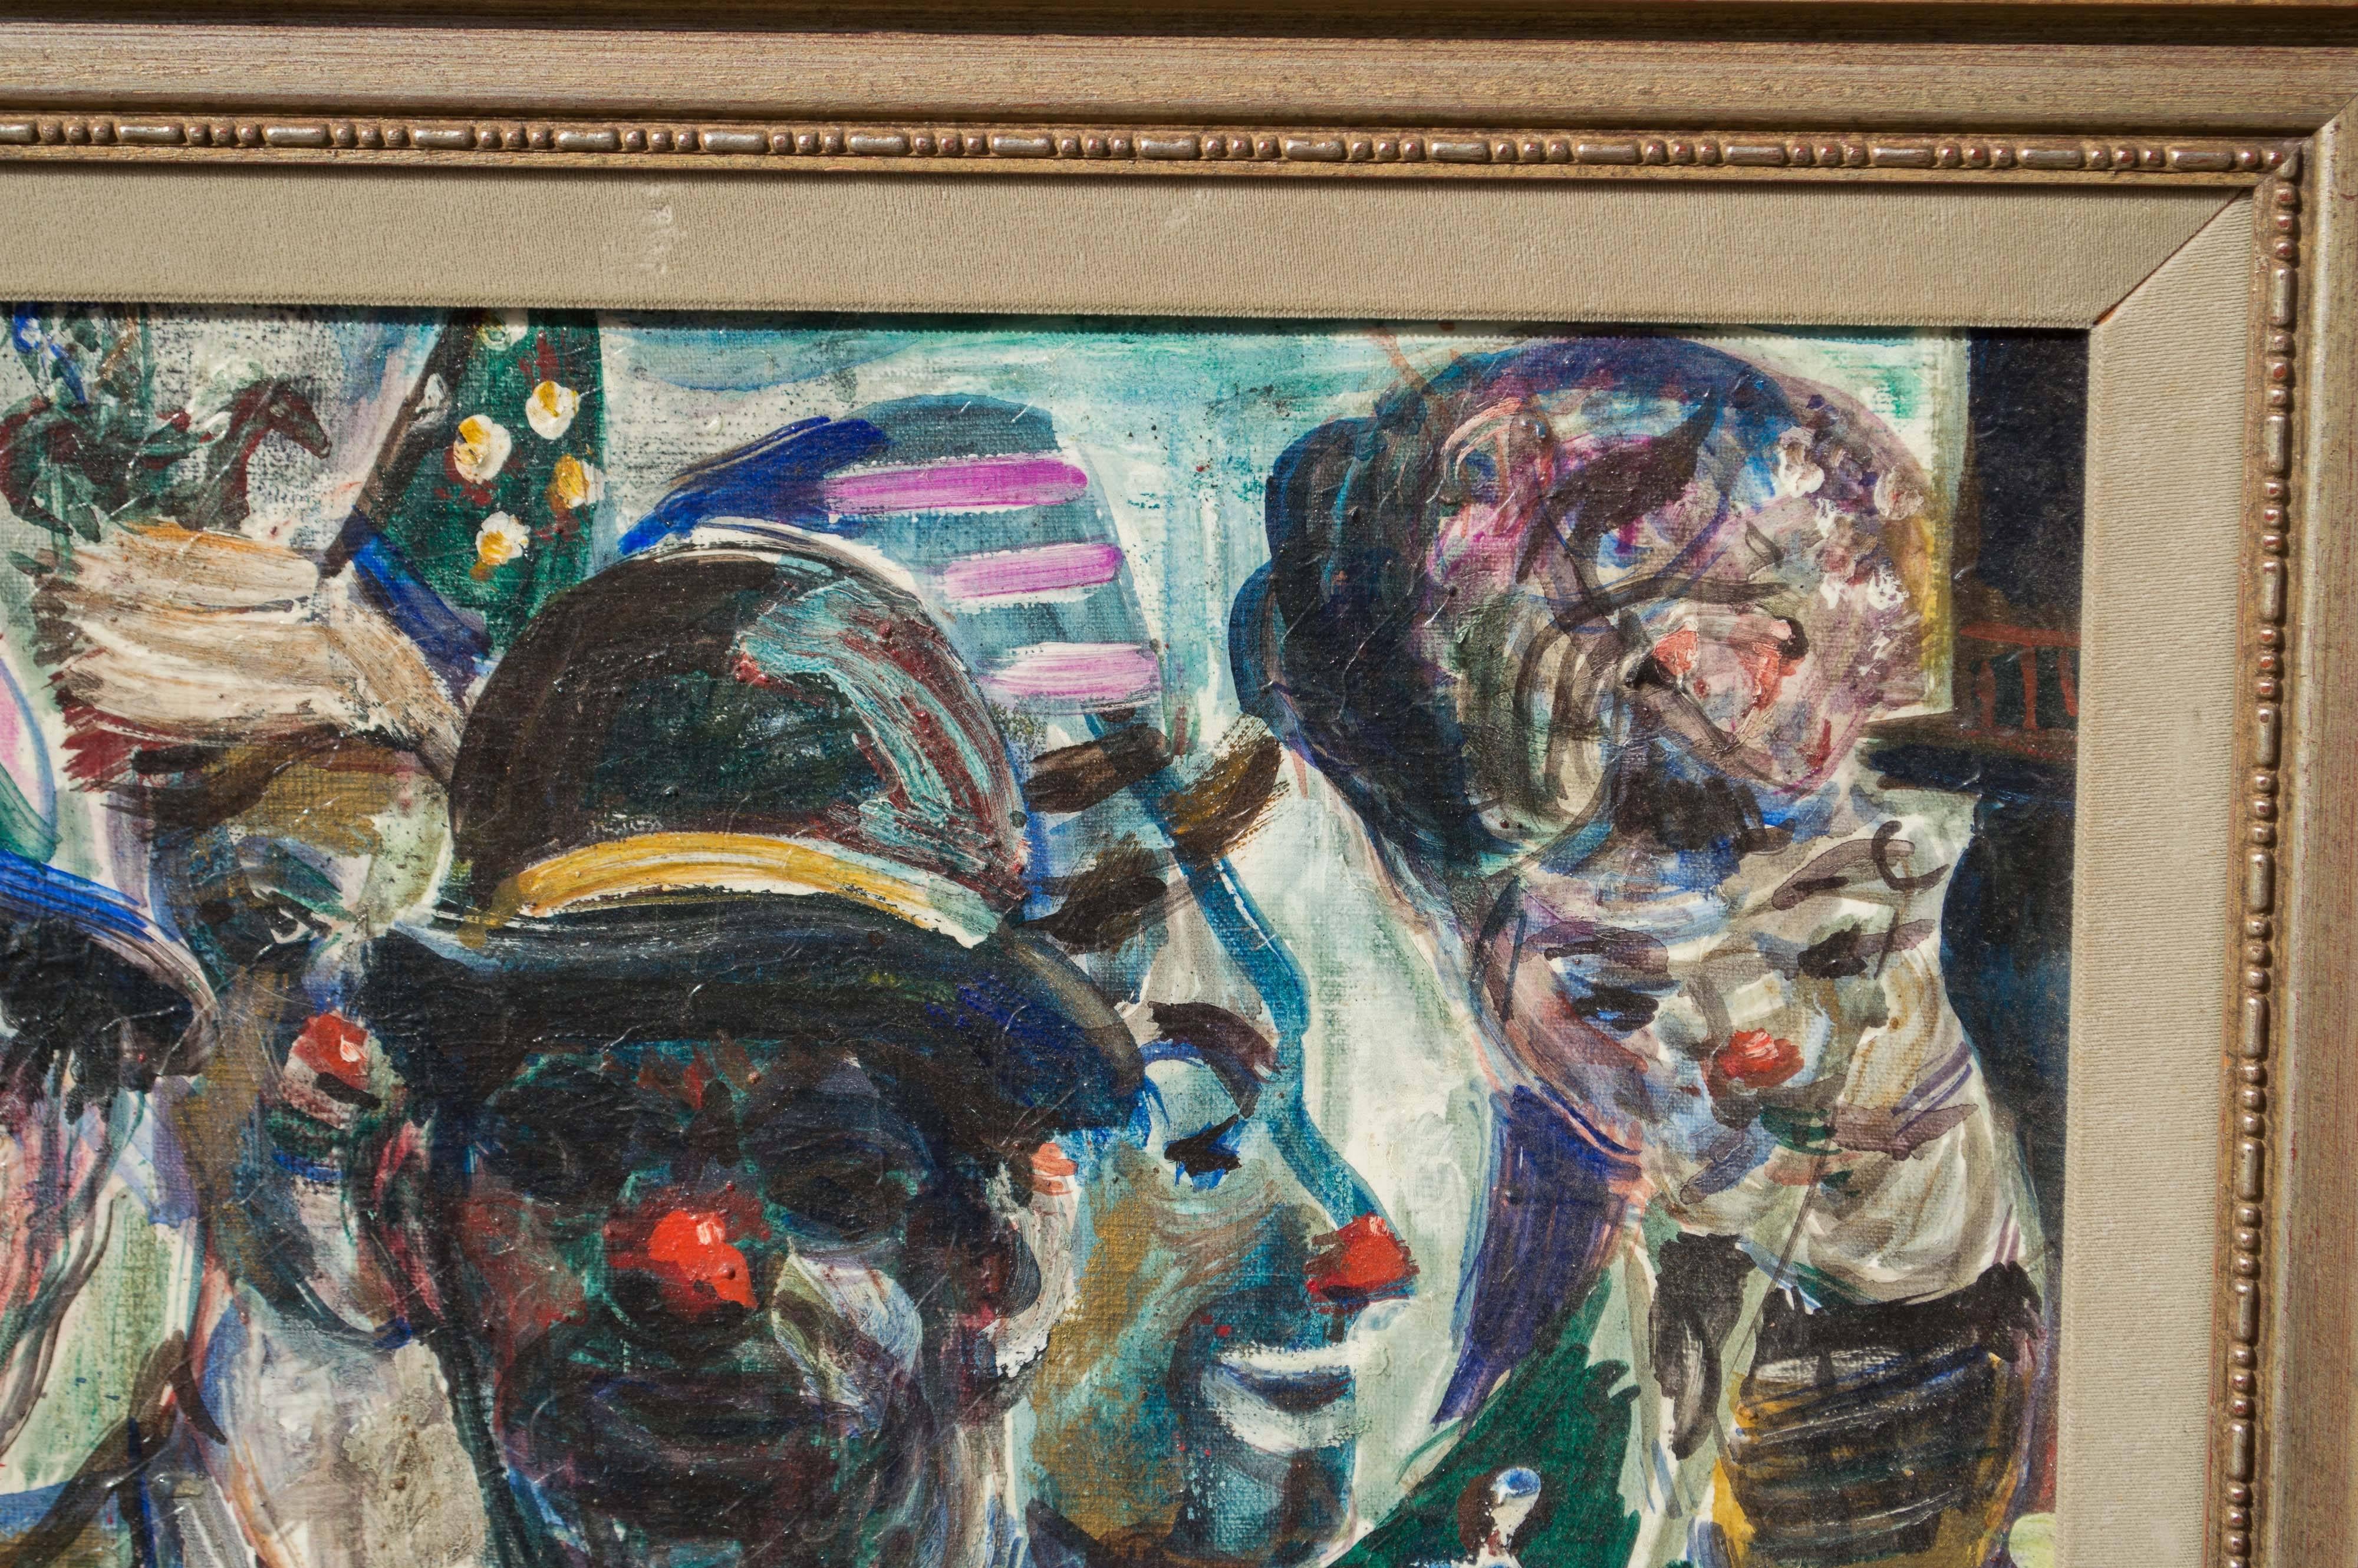 Une étude de clowns de cirque, huile sur toile, par l'artiste de San Francisco Pat Cucaro (1904 - 2004). Acheté à la galerie Corey à North Beach. Signé indistinctement sur le bord inférieur droit. L'encadrement porte l'étiquette de la galerie Corey